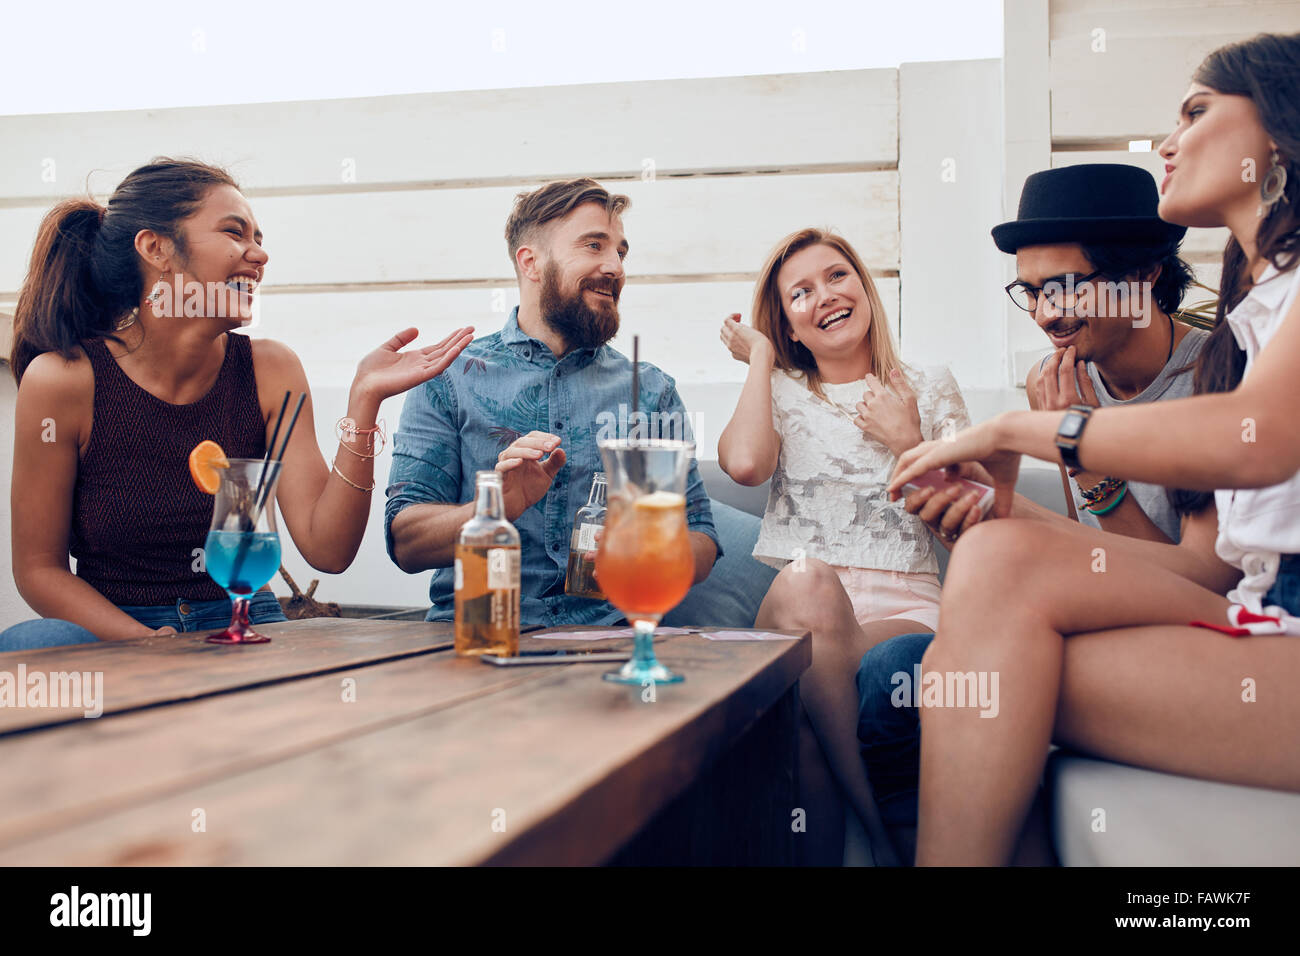 Porträt der glückliche junge Menschen zusammensitzen und lachen. Gemischtrassig Freunde auf einer Party mit Cocktails am Tisch genießen. Stockfoto